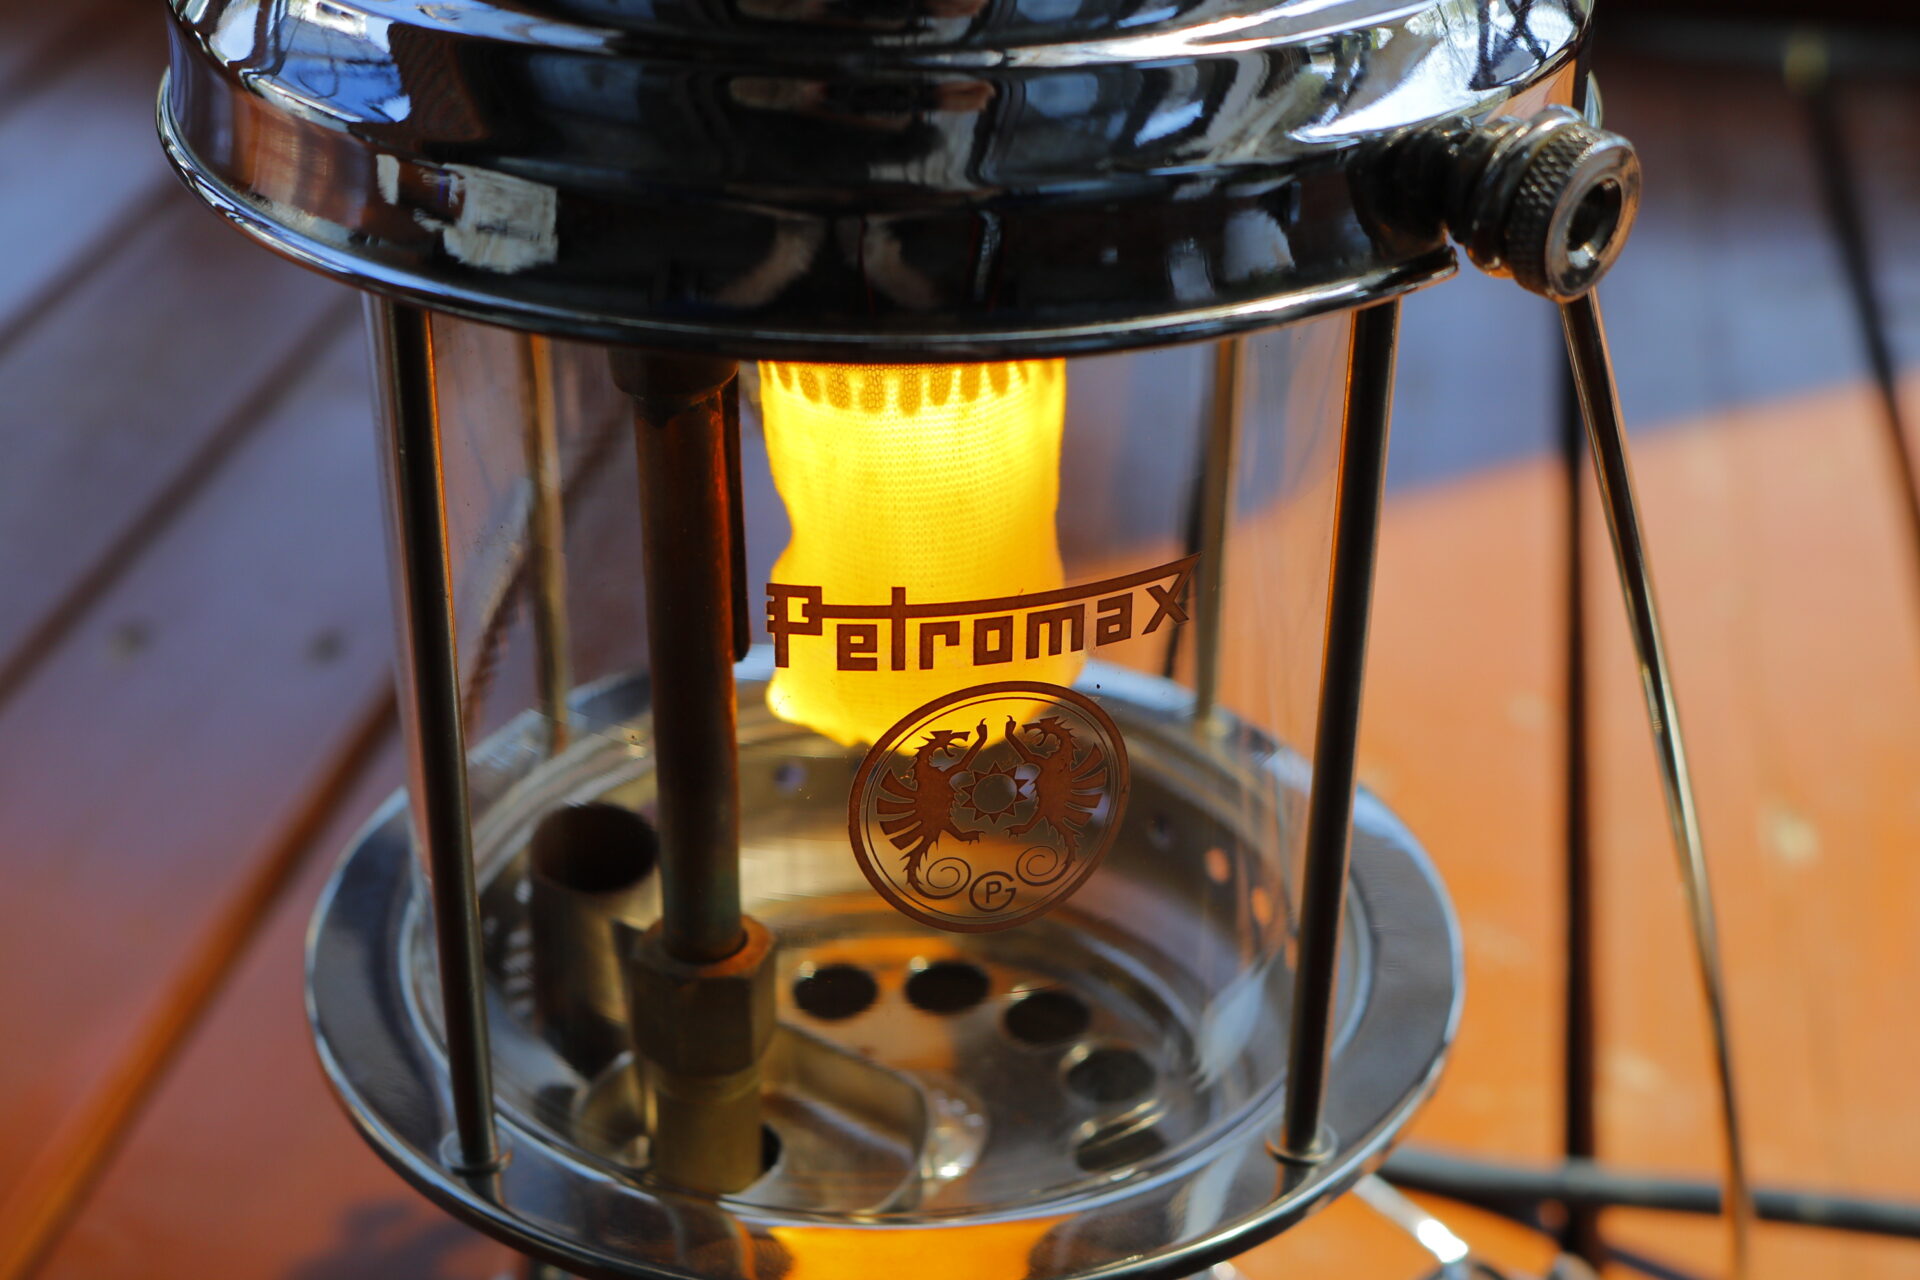 Petromax ペトロマックス ポンプアダプターHK500シリーズ専用 2159 【69%OFF!】